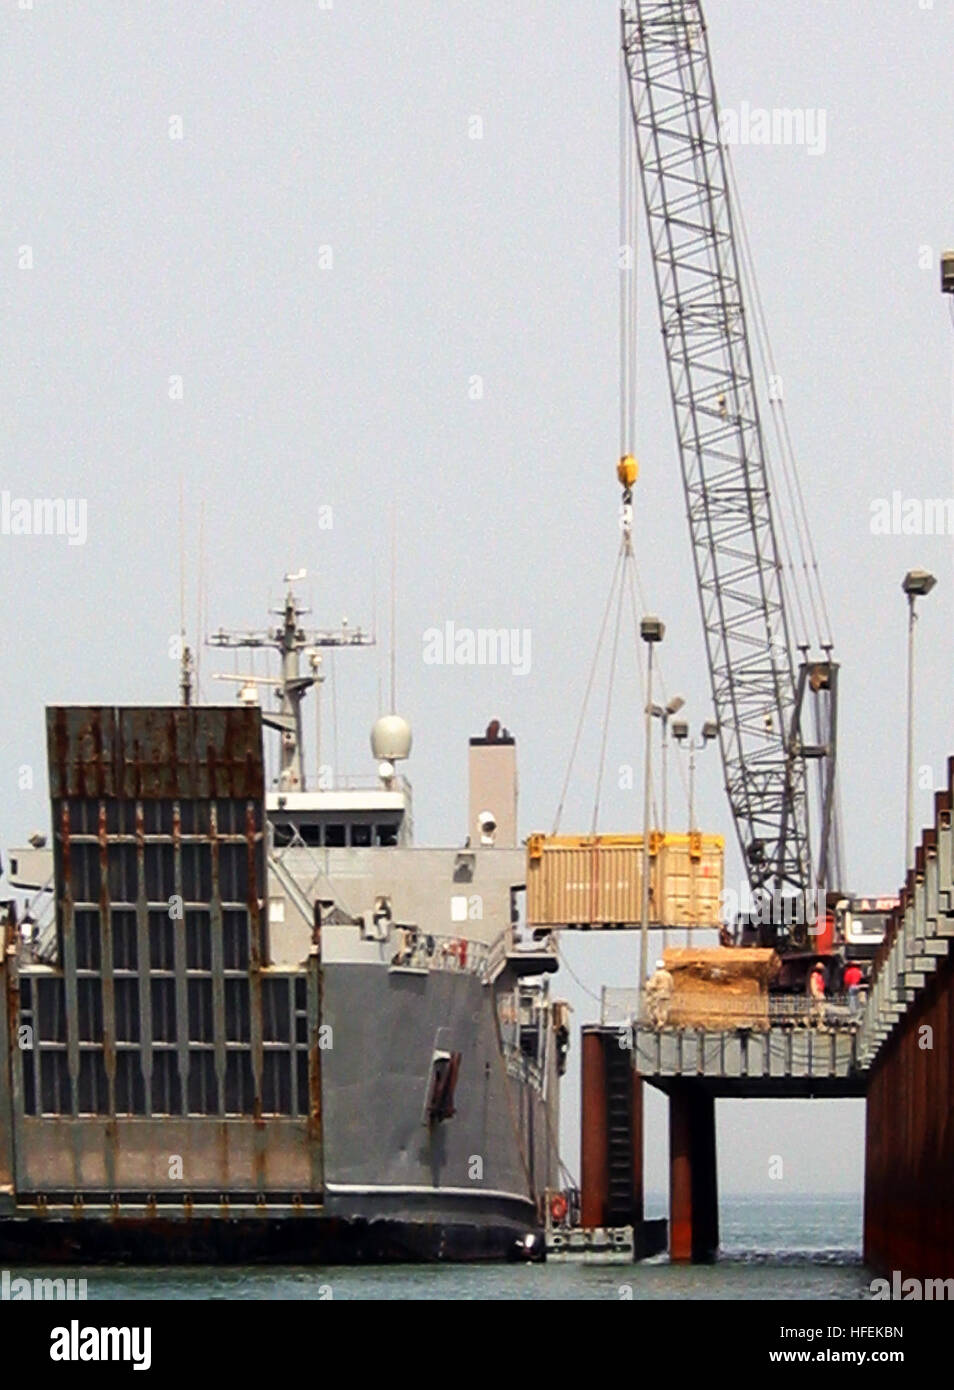 030511-N-1050K-044 Camp patriota, Kuwait (11 maggio 2003) -- Un U.S. Esercito il supporto logistico nave (LSV) tira al fianco degli Stati Uniti Navy elevata System-Modular Causeway (ELCAS-M) per le apparecchiature offload durante continua logistica comune oltre la riva (JLOTS) operazioni. Il 275-piedi lungo GSS è la più grande nave l'ELCAS-M è in grado di gestire e viene utilizzato per l'alimentazione militare trasporto di personale e materiale rotabile Veicoli e contenitore cargo. Stati Uniti Foto di Marina dal giornalista di prima classe Giuseppe Krypel. (Rilasciato) Navy US 030511-N-1050K-044 U.S. Esercito il supporto logistico nave (LSV) tira al fianco degli Stati Uniti Navy Foto Stock